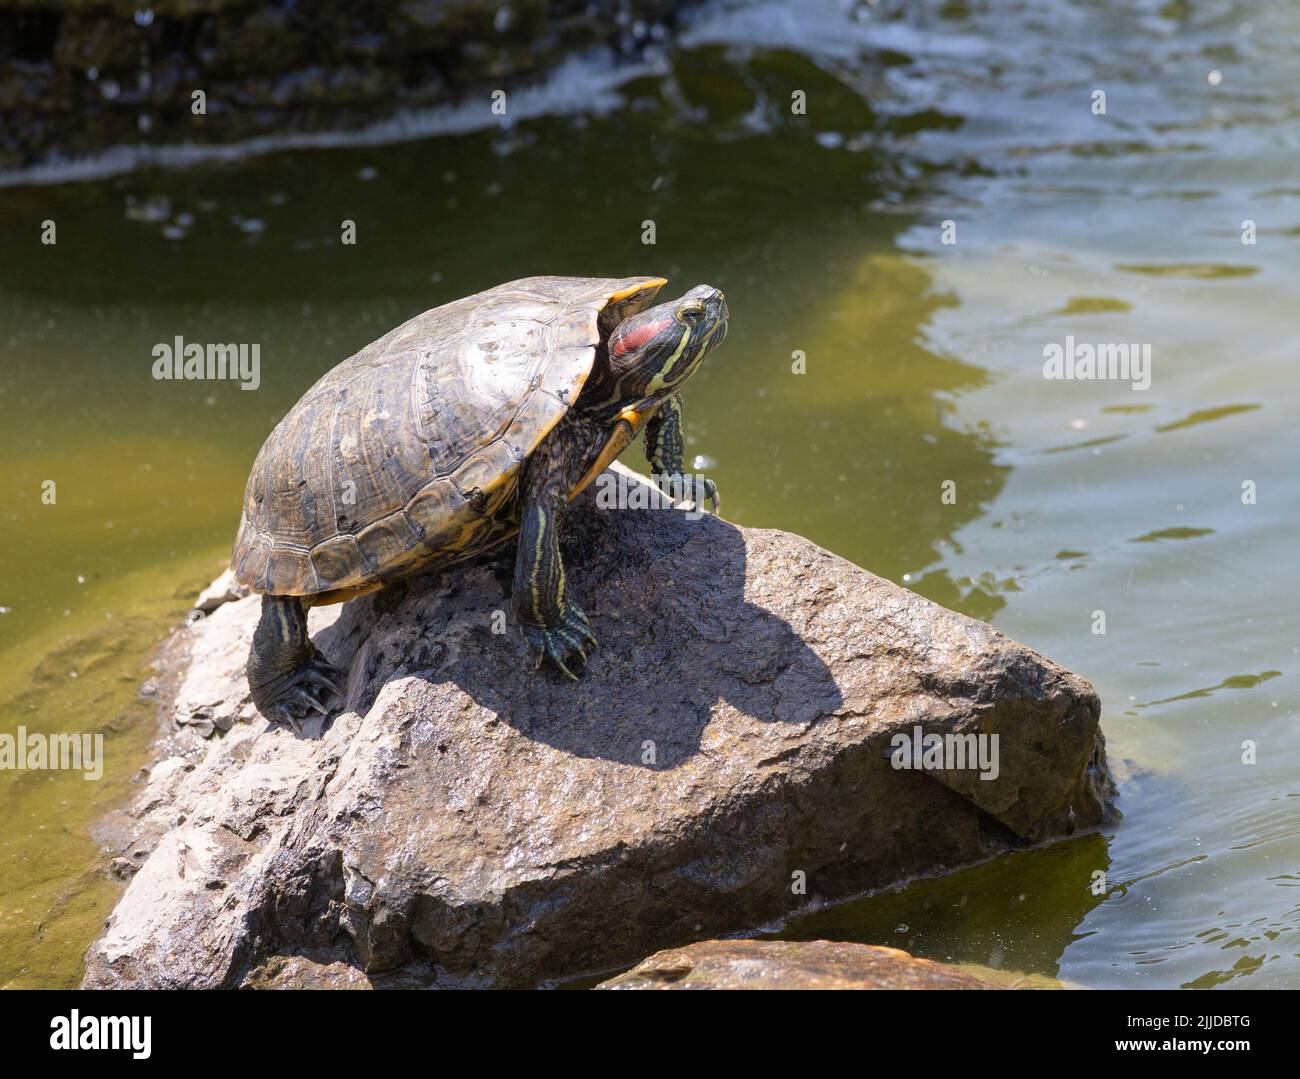 Painter turtle sunning itself on a rock Stock Photo